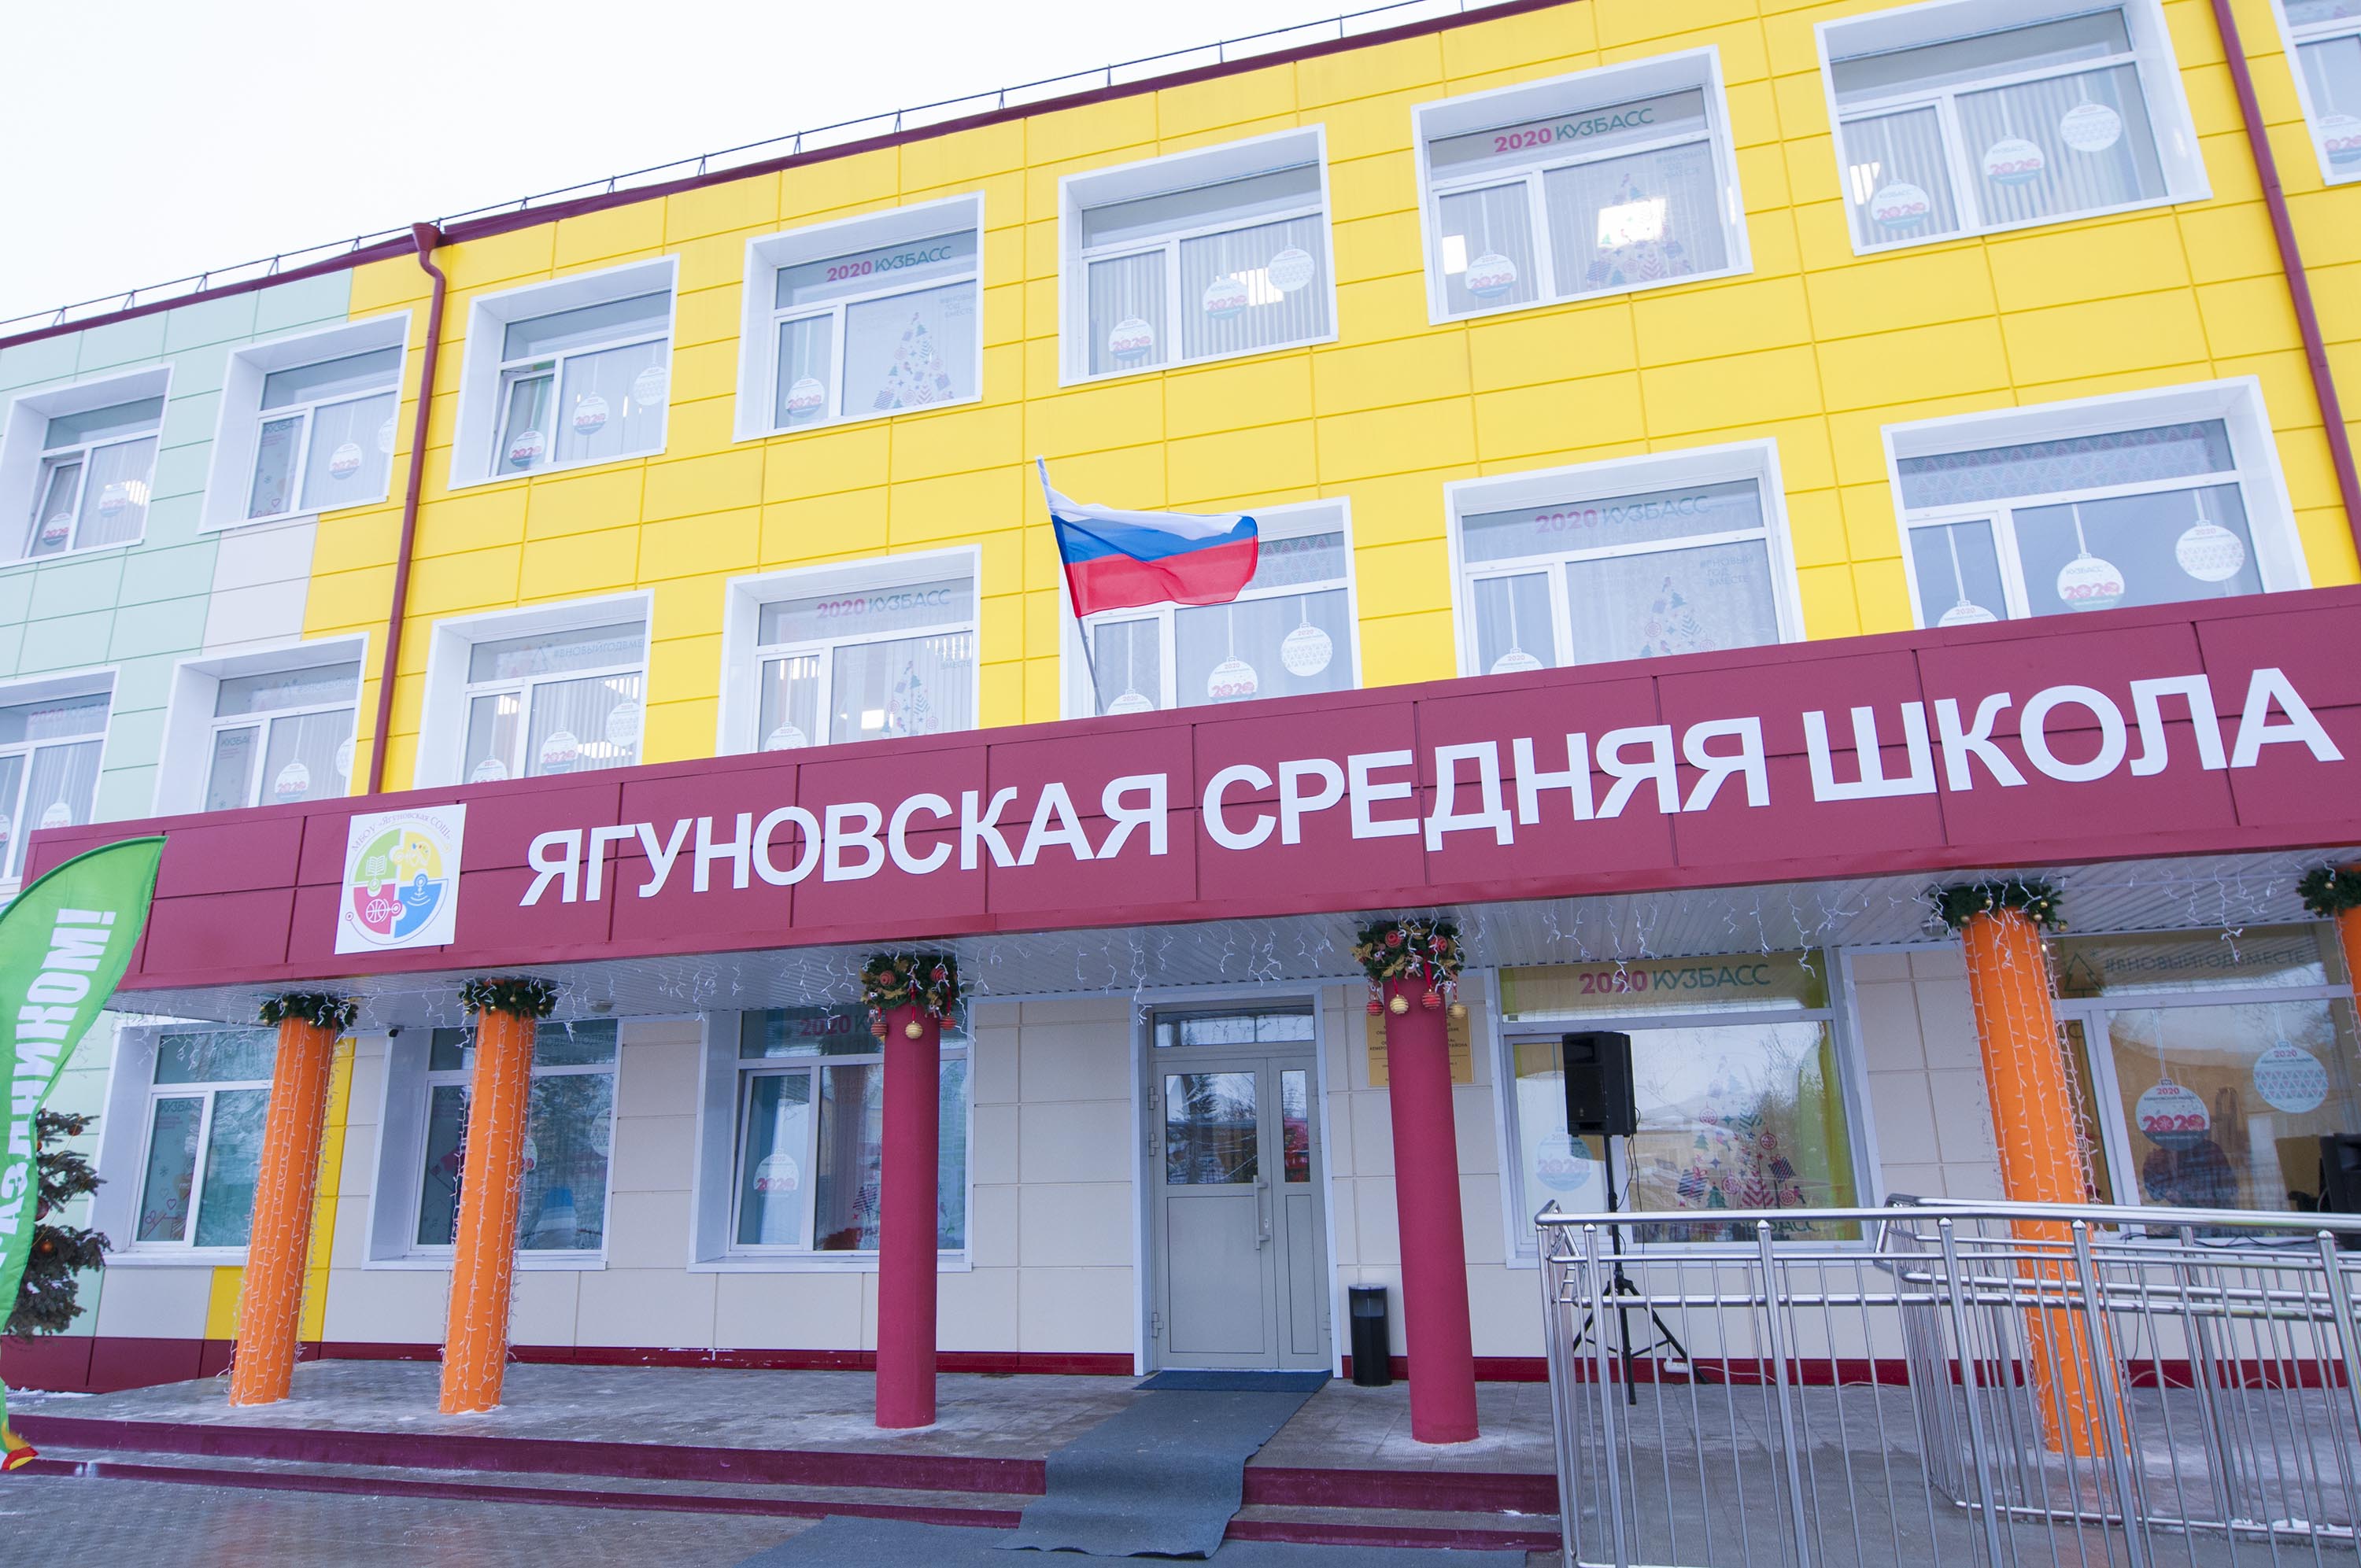 Открытие Ягуновской средней школы после капитального ремонта в рамках областной программы "Моя новая школа"